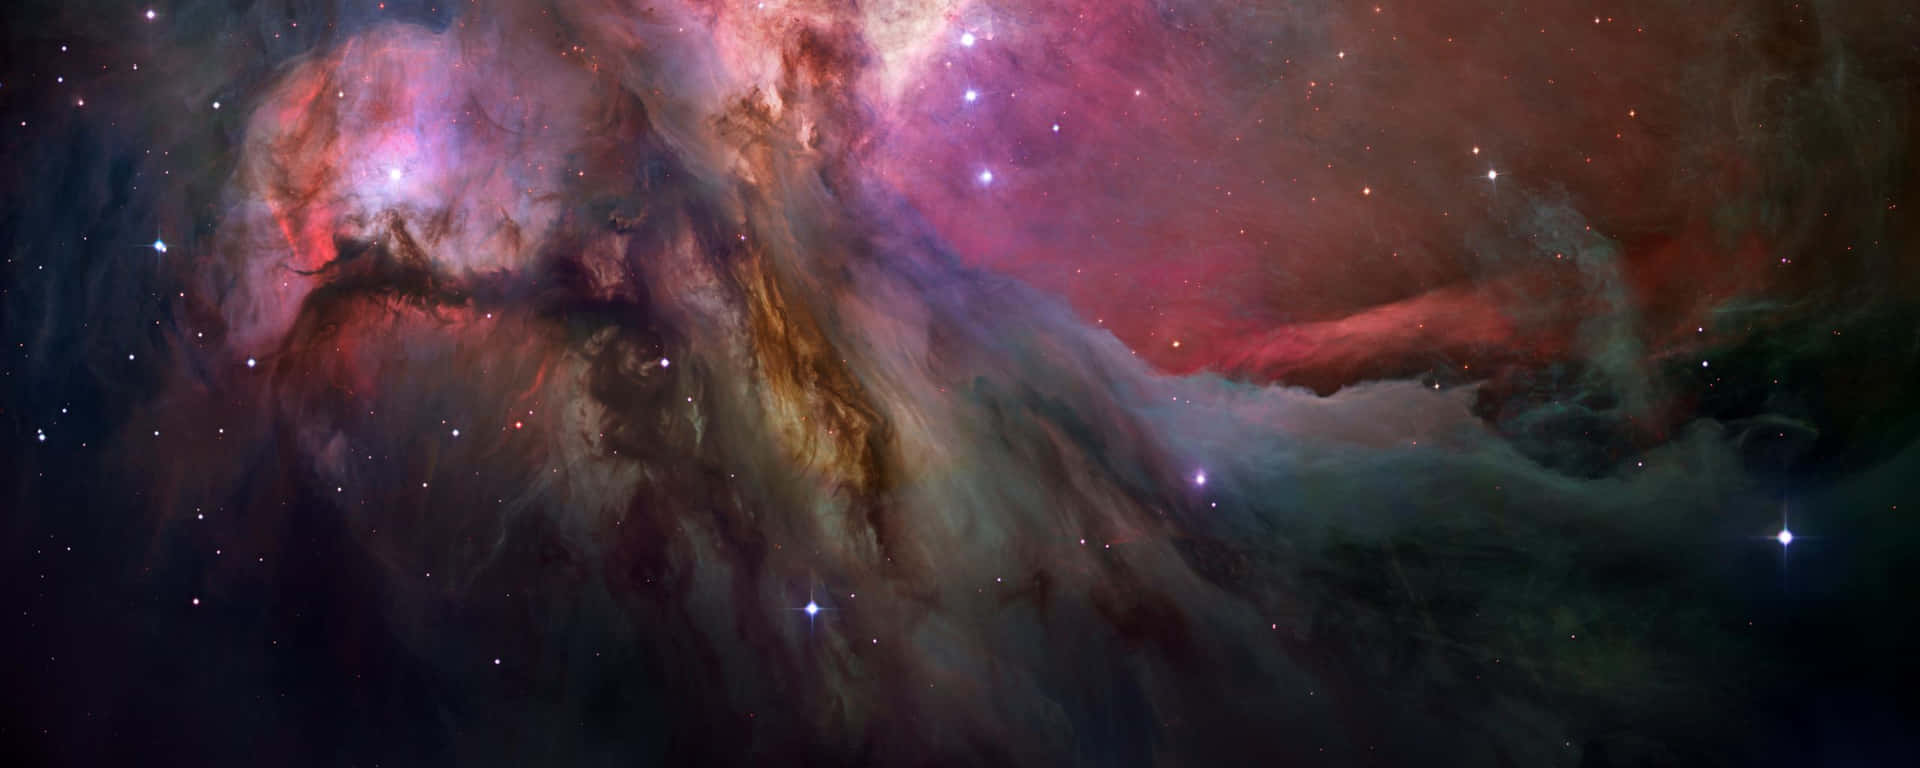 Astronomiskprakt: En Fantastisk Bild Av Stjärnbildning Från Hubble-teleskopet Wallpaper